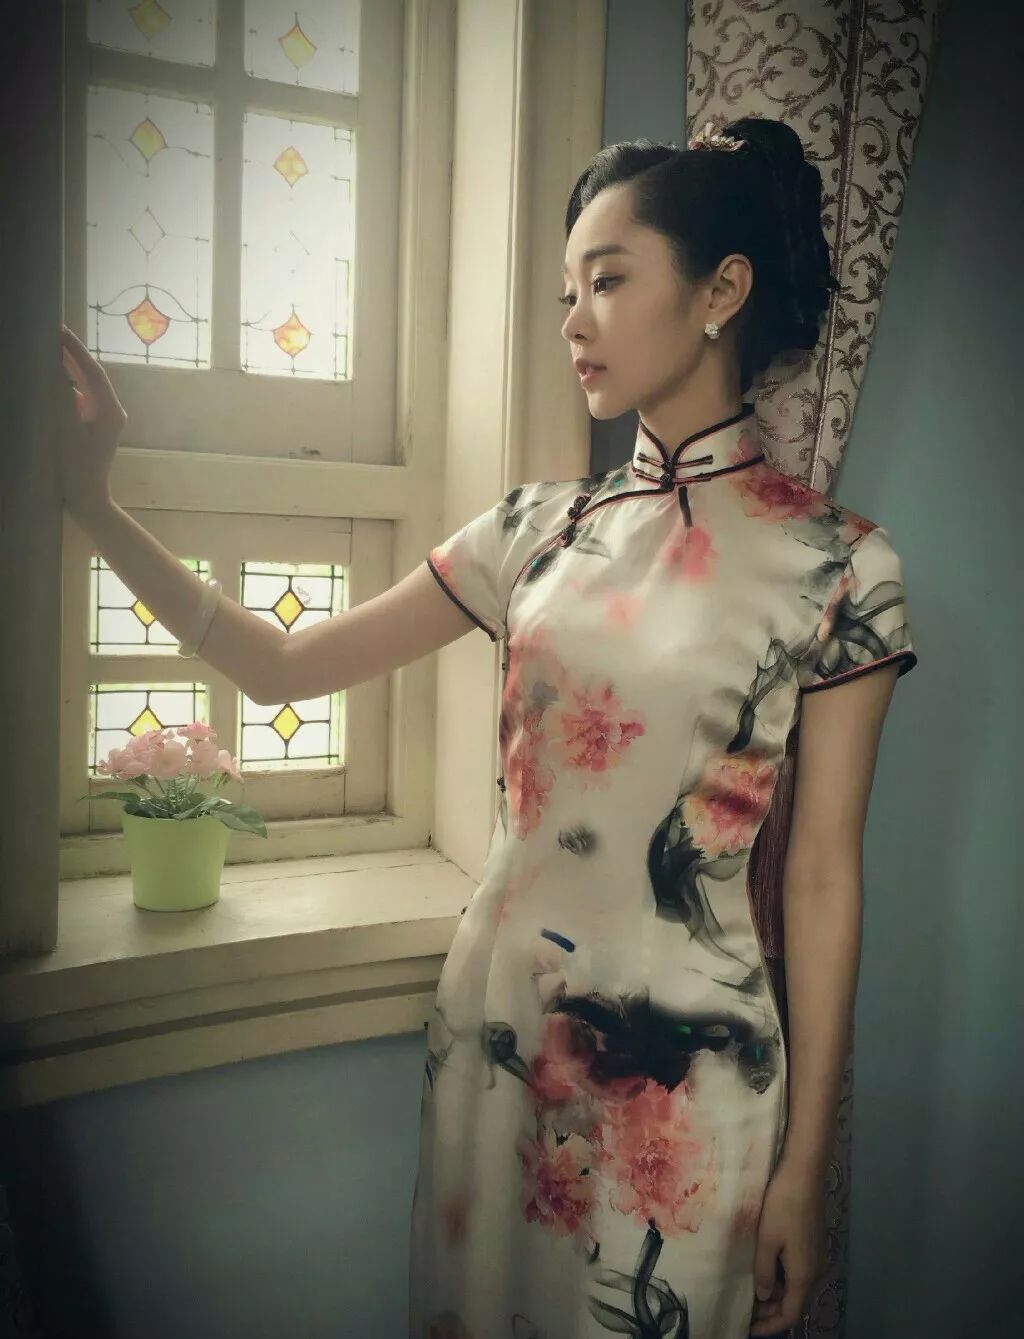 如果旧上海有特色,一定是旗袍女人!